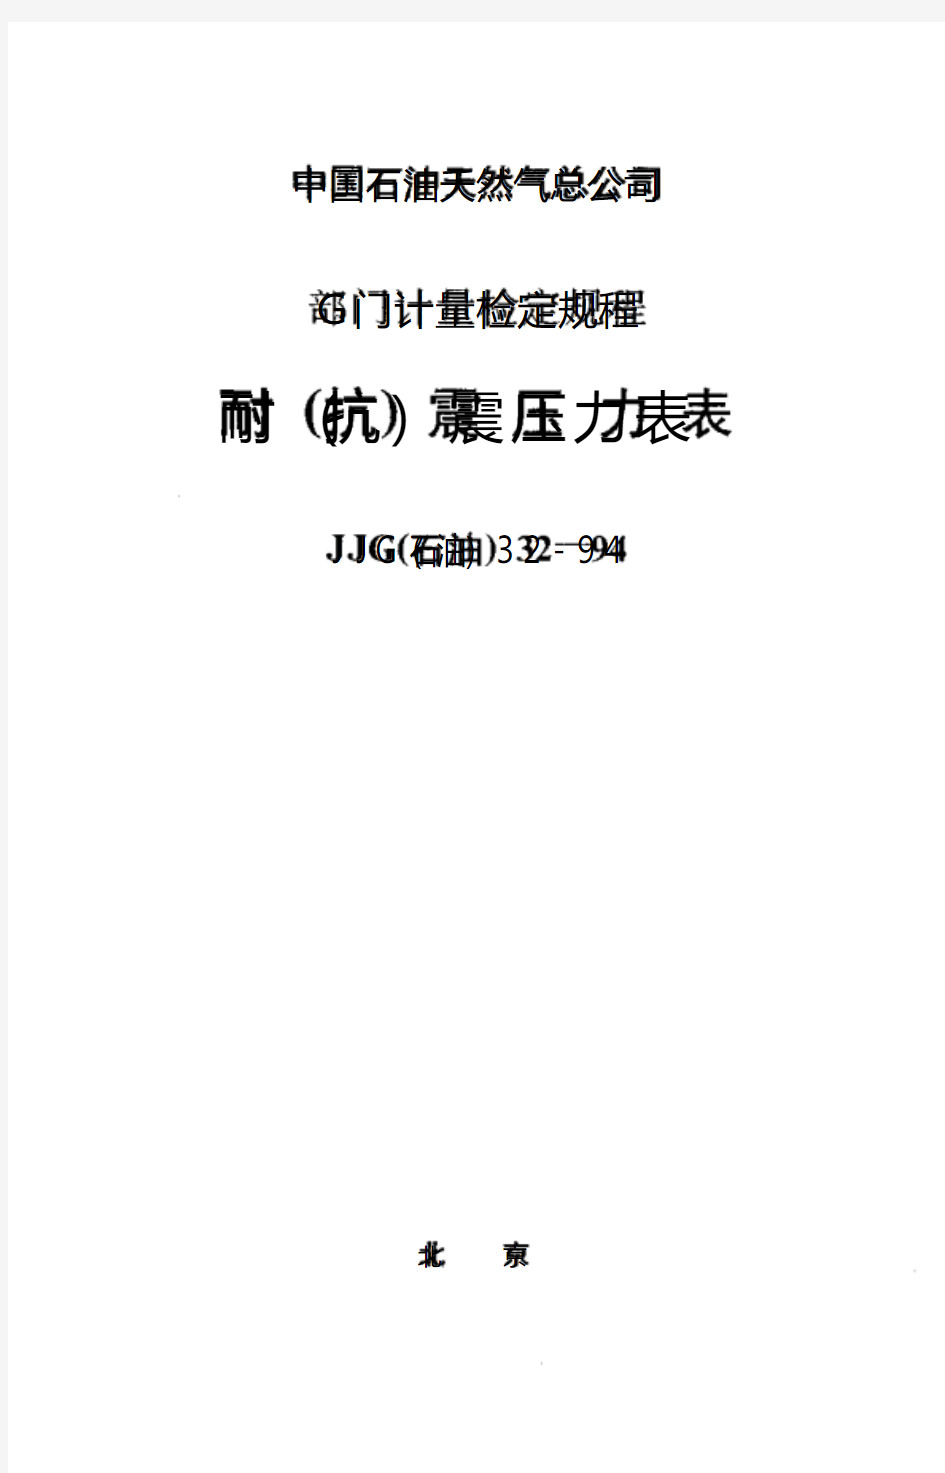 JJG(石油)32-1994 耐(抗)震压力表检定规程